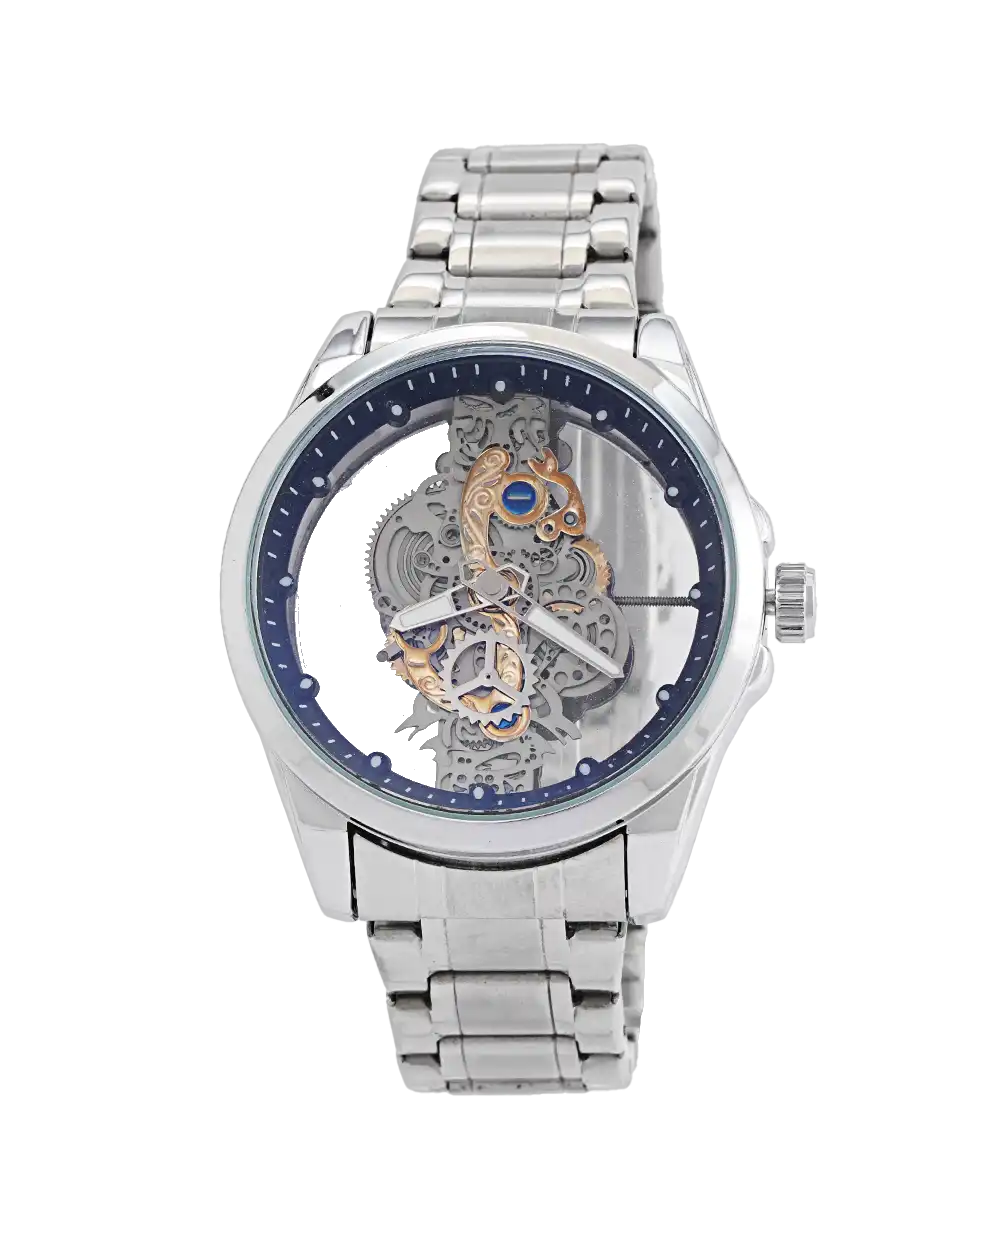 خرید ساعت مچی مردانه بین باند BIN BOND صفحه اسکلتون مدل 1739 رنگ نقره ای با بهترین قیمت به همراه جعبه ی ساعت و ارسال رایگان به سراسر ایران